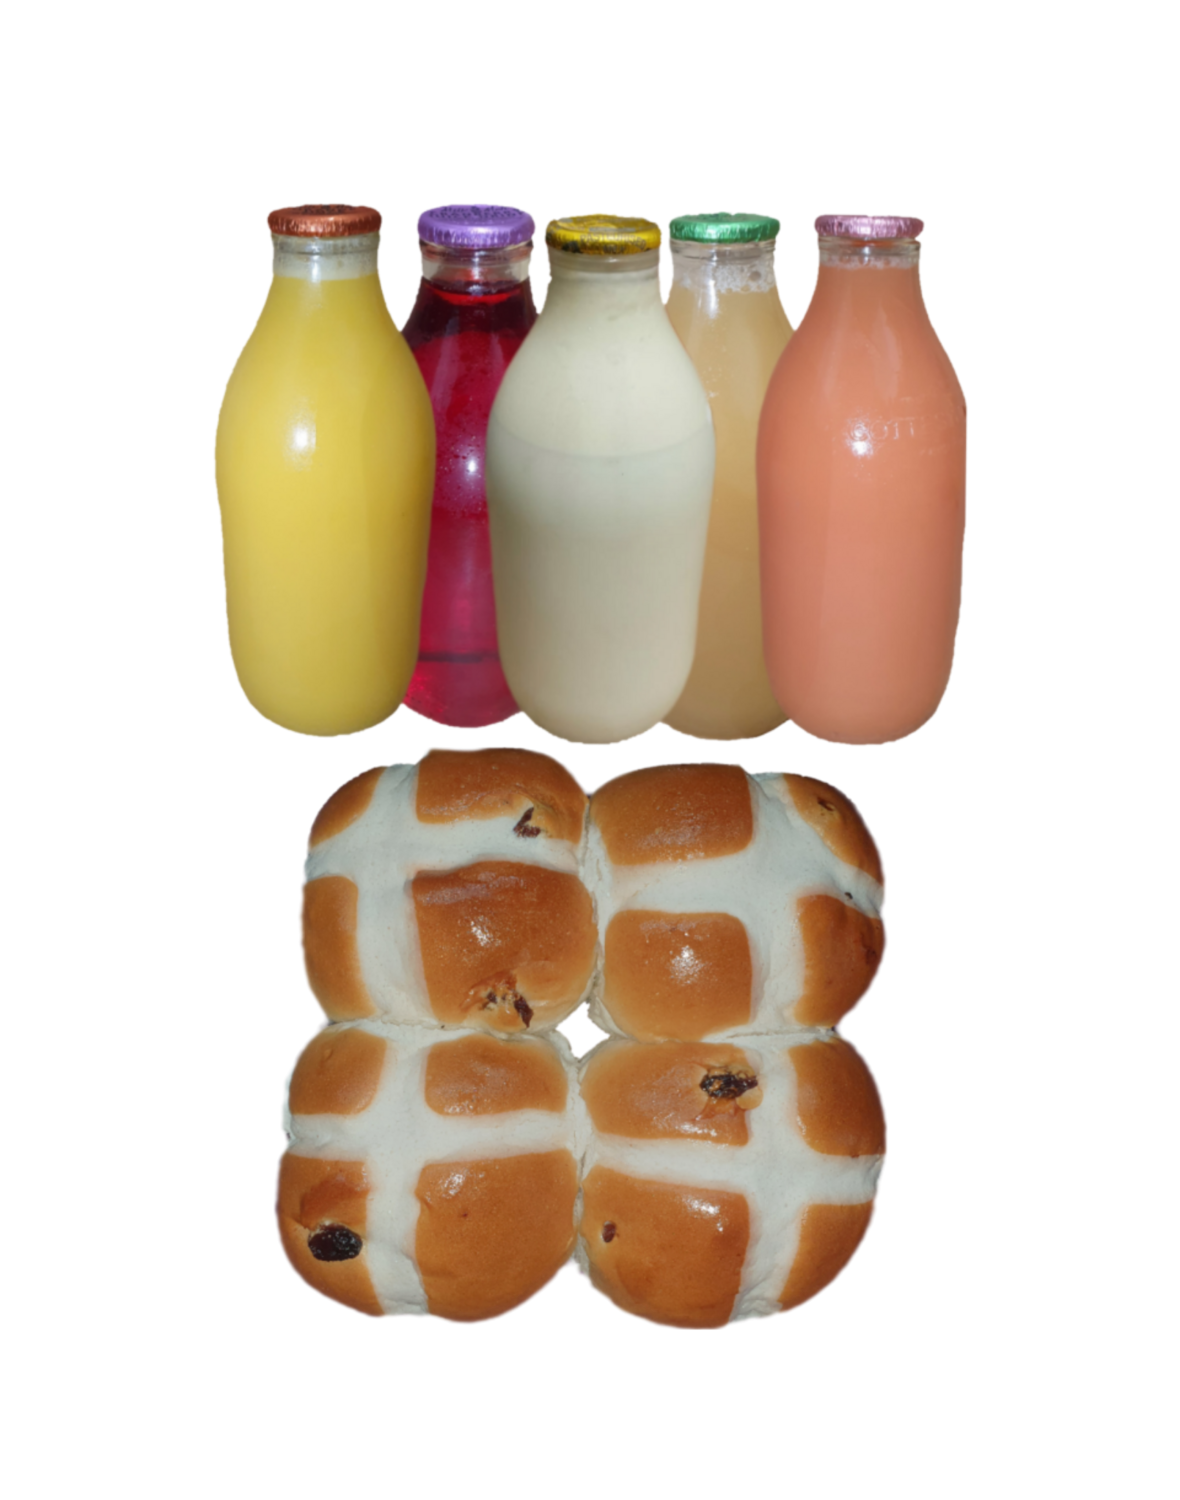 Hot cross buns, juice + milk bundle (35p saved)